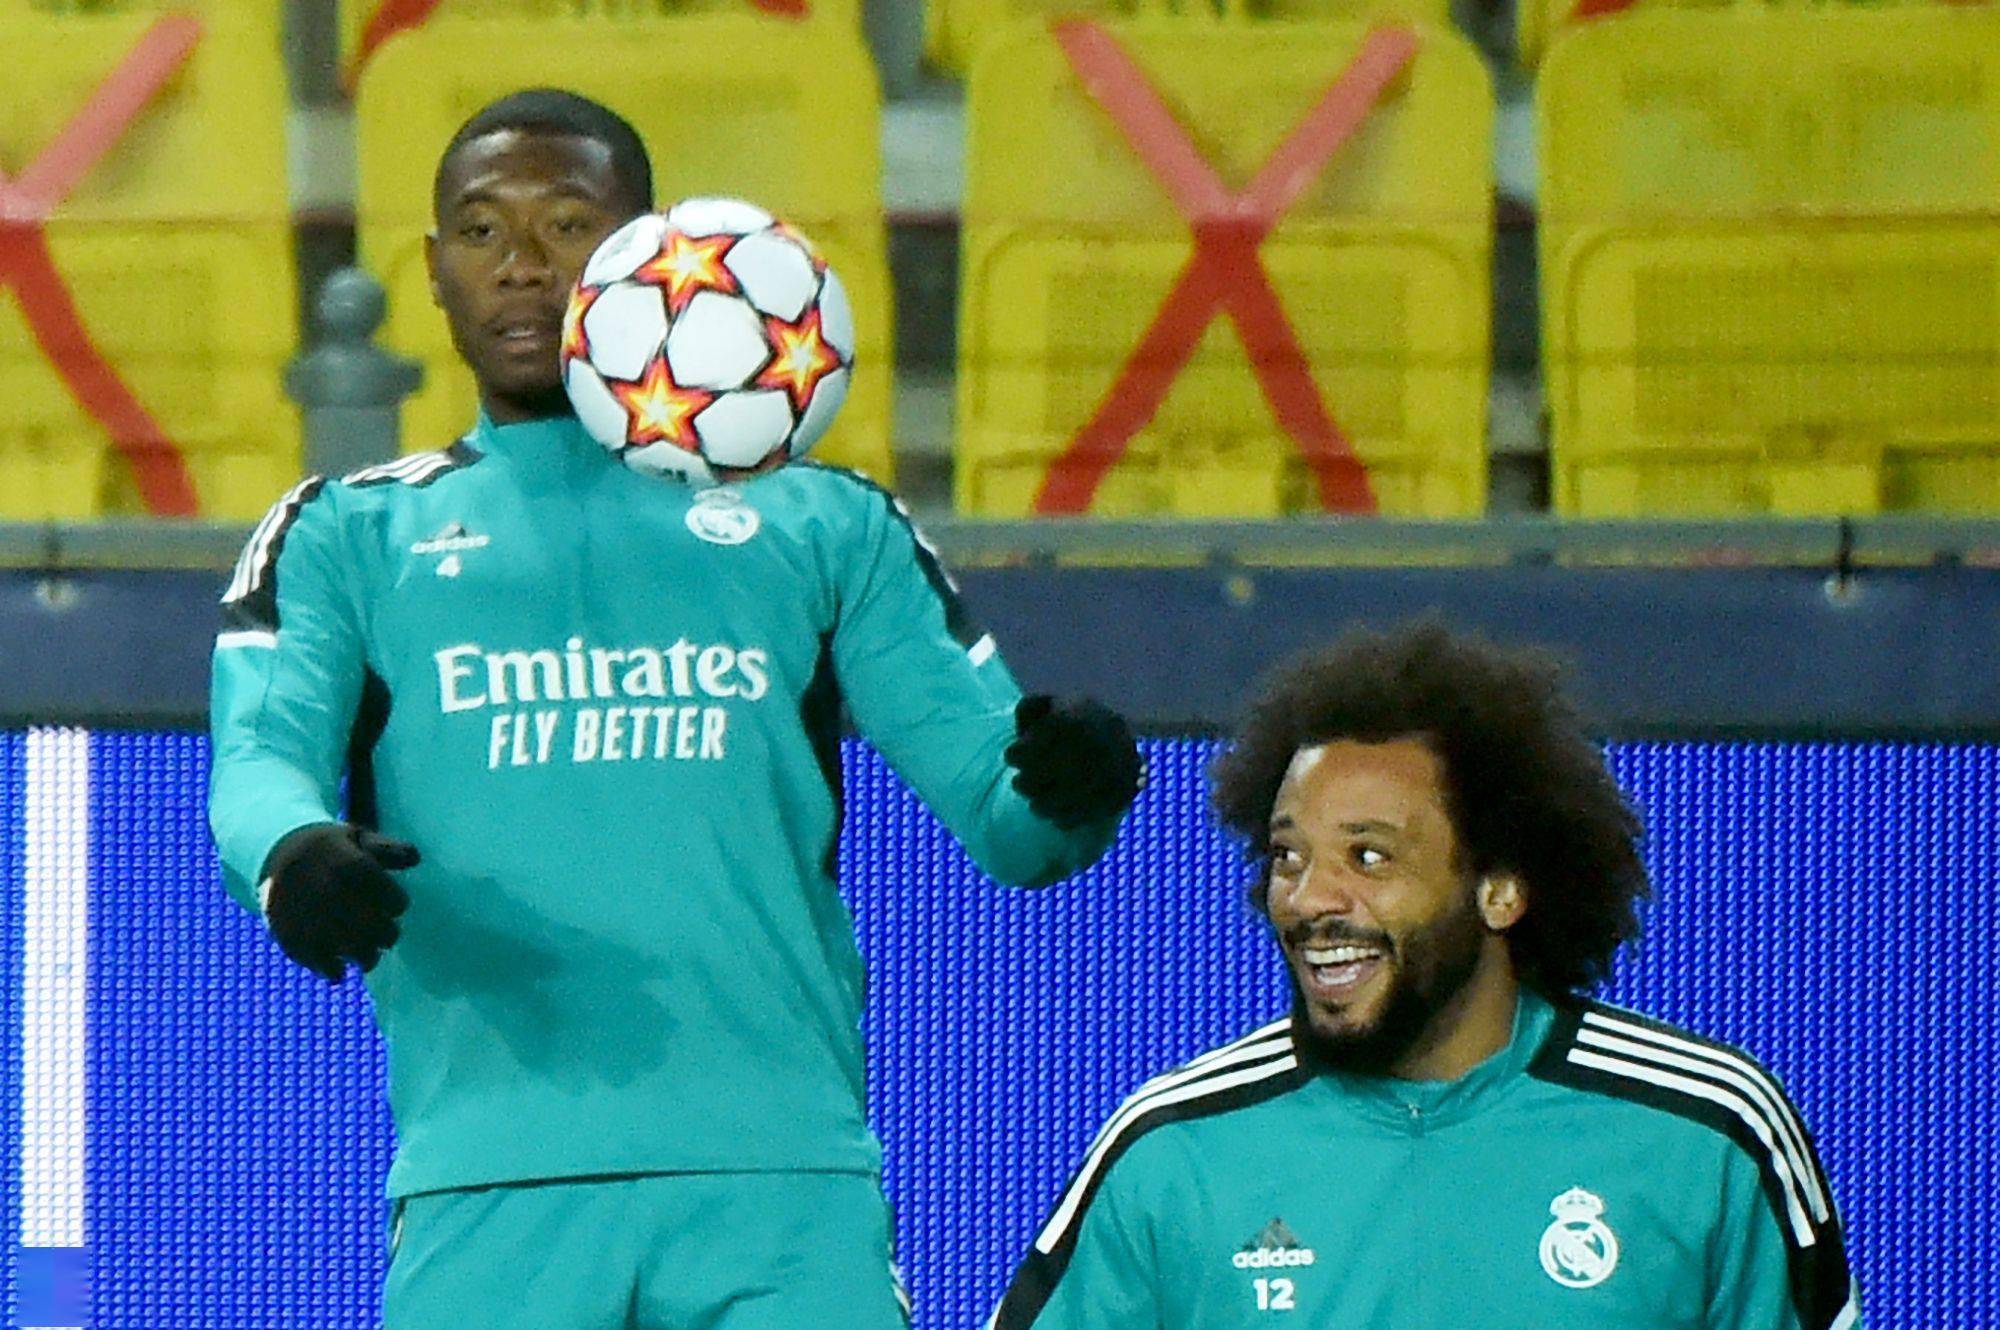 11月23日,皇家马德里队球员马塞洛(右)和阿拉巴在训练中.